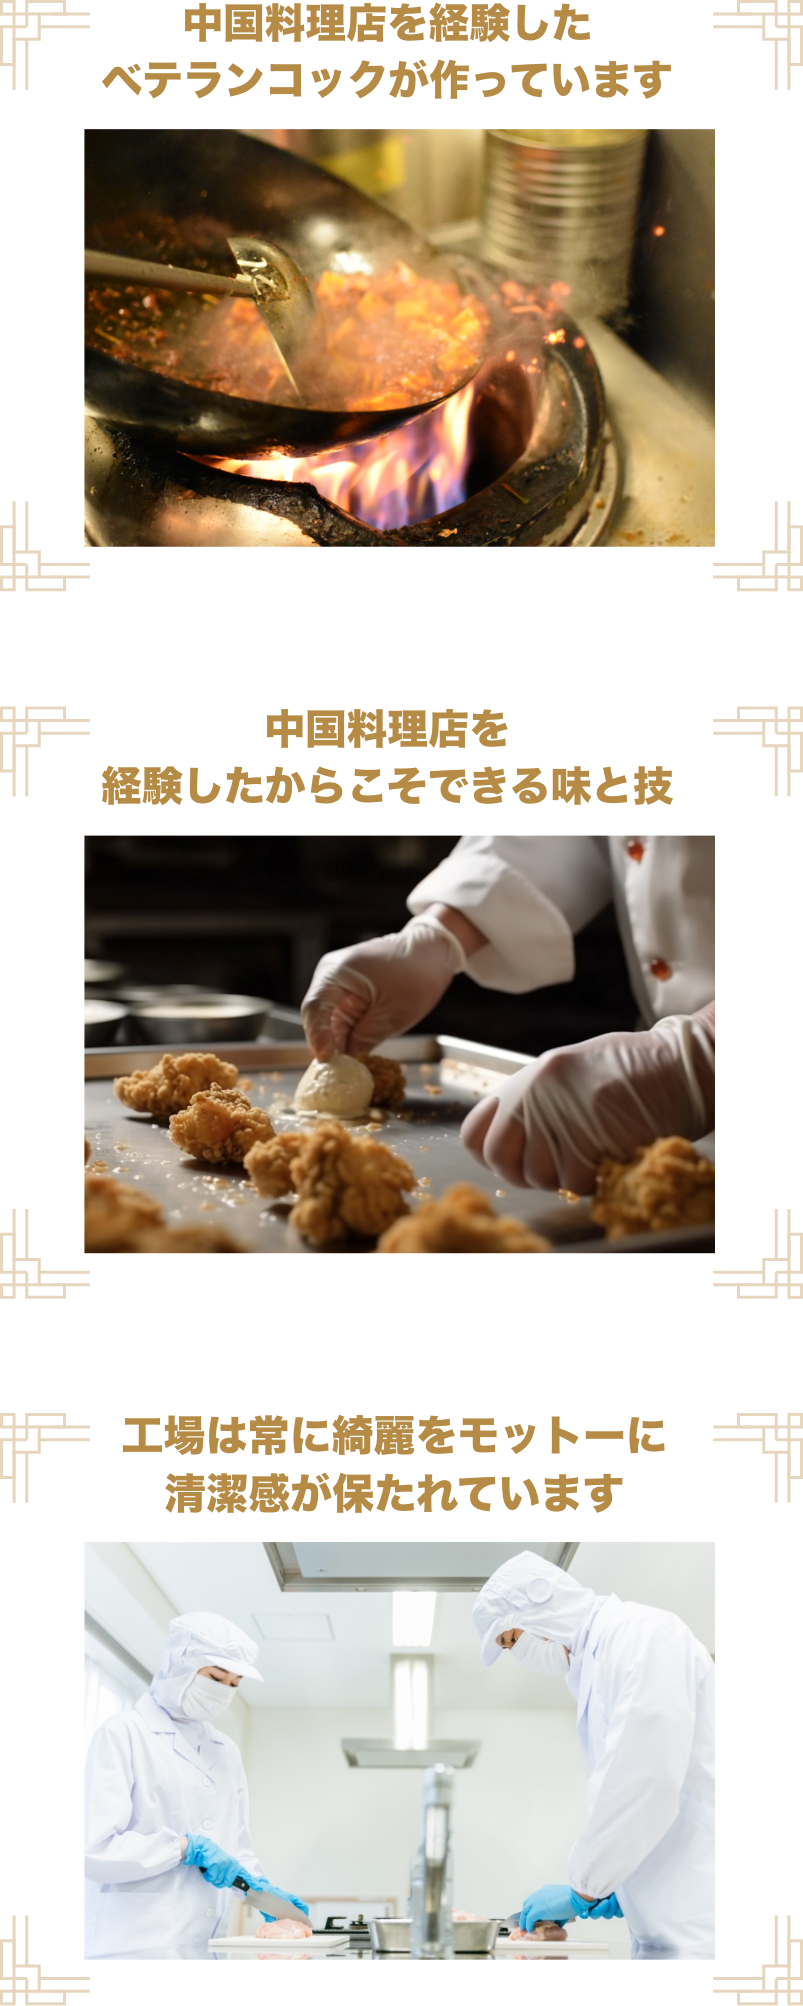 中国料理店を経験したベテランコックが作っています 中国料理店を経験したからこそできる味と技 工場は常に綺麗をモットーに清潔感が保たれています